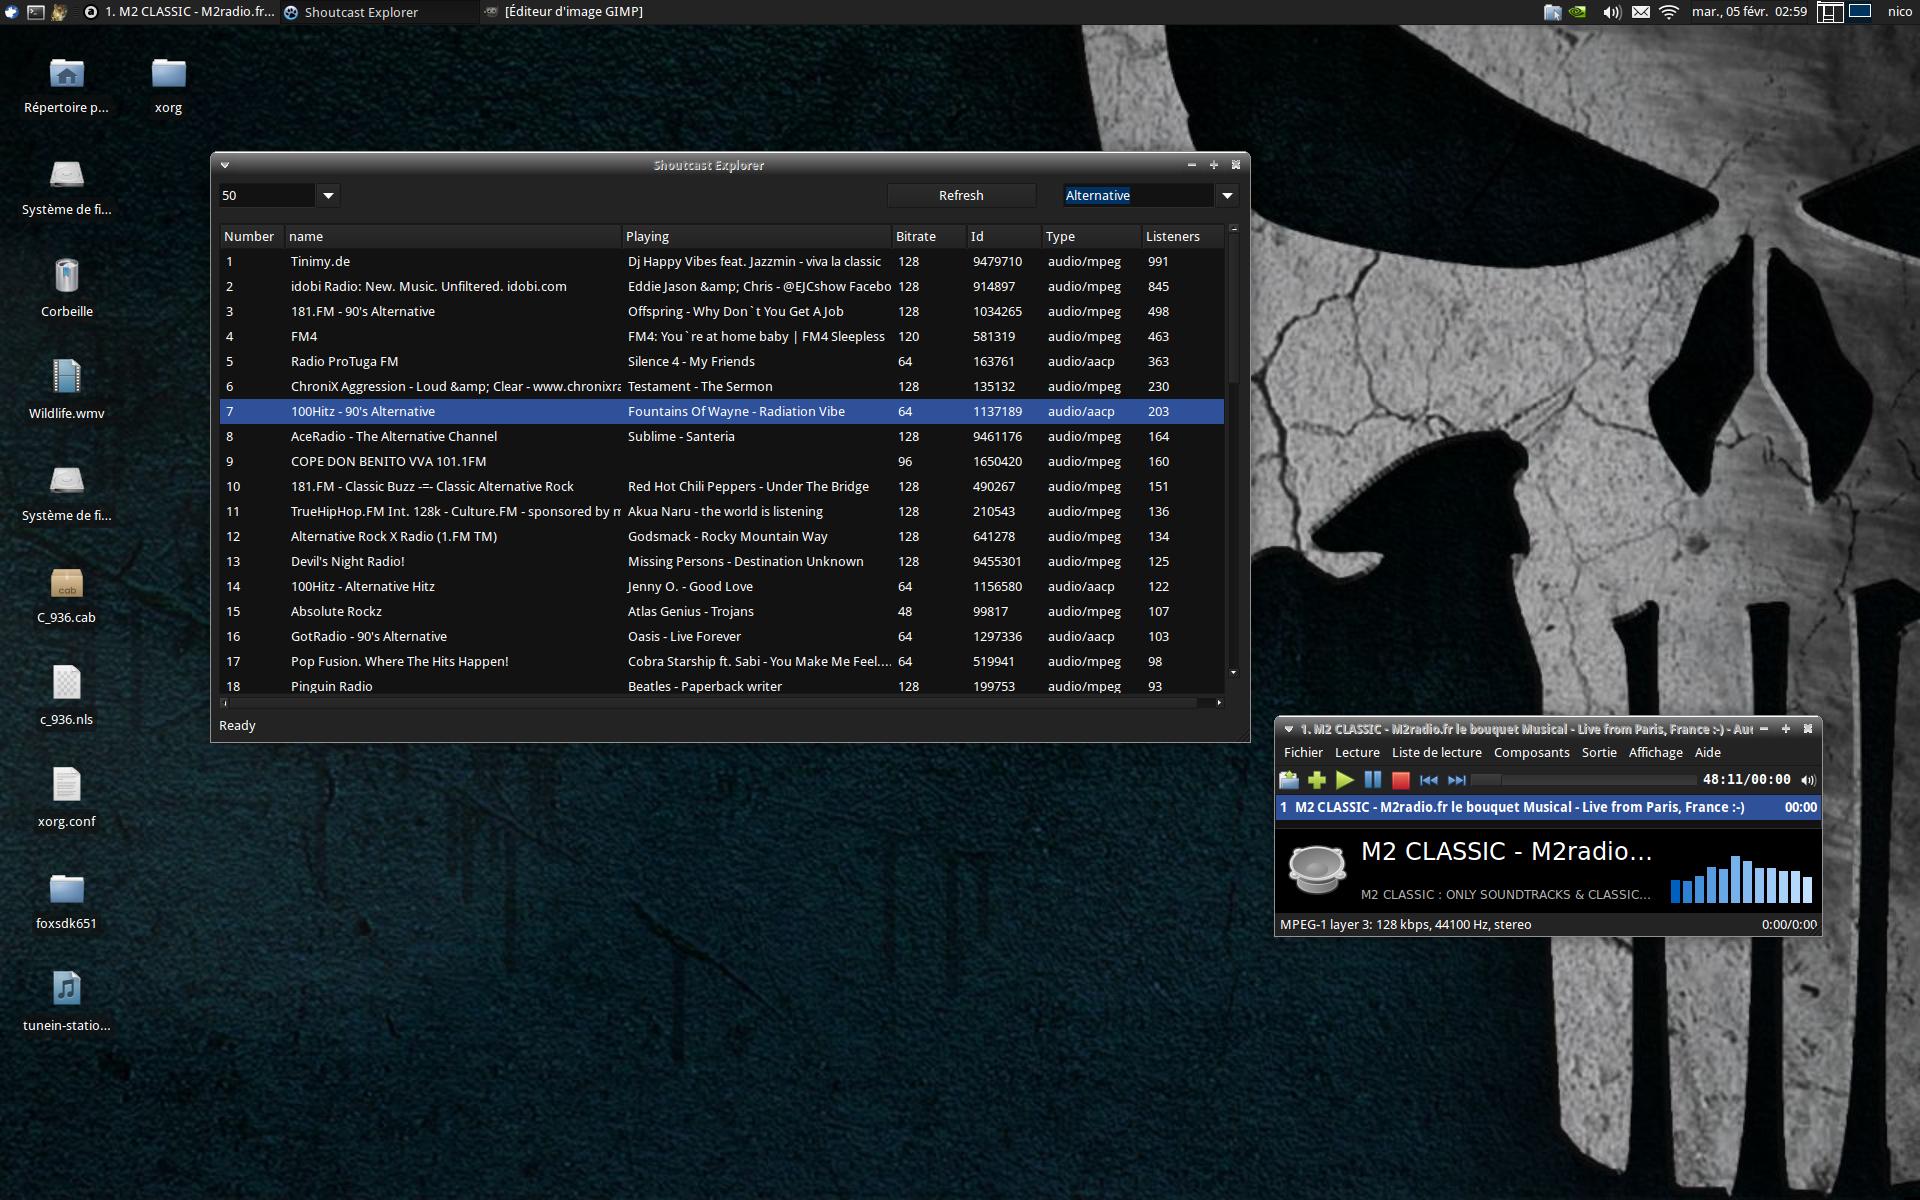 Shoutcast Explorer 2.1.29.0 software screenshot